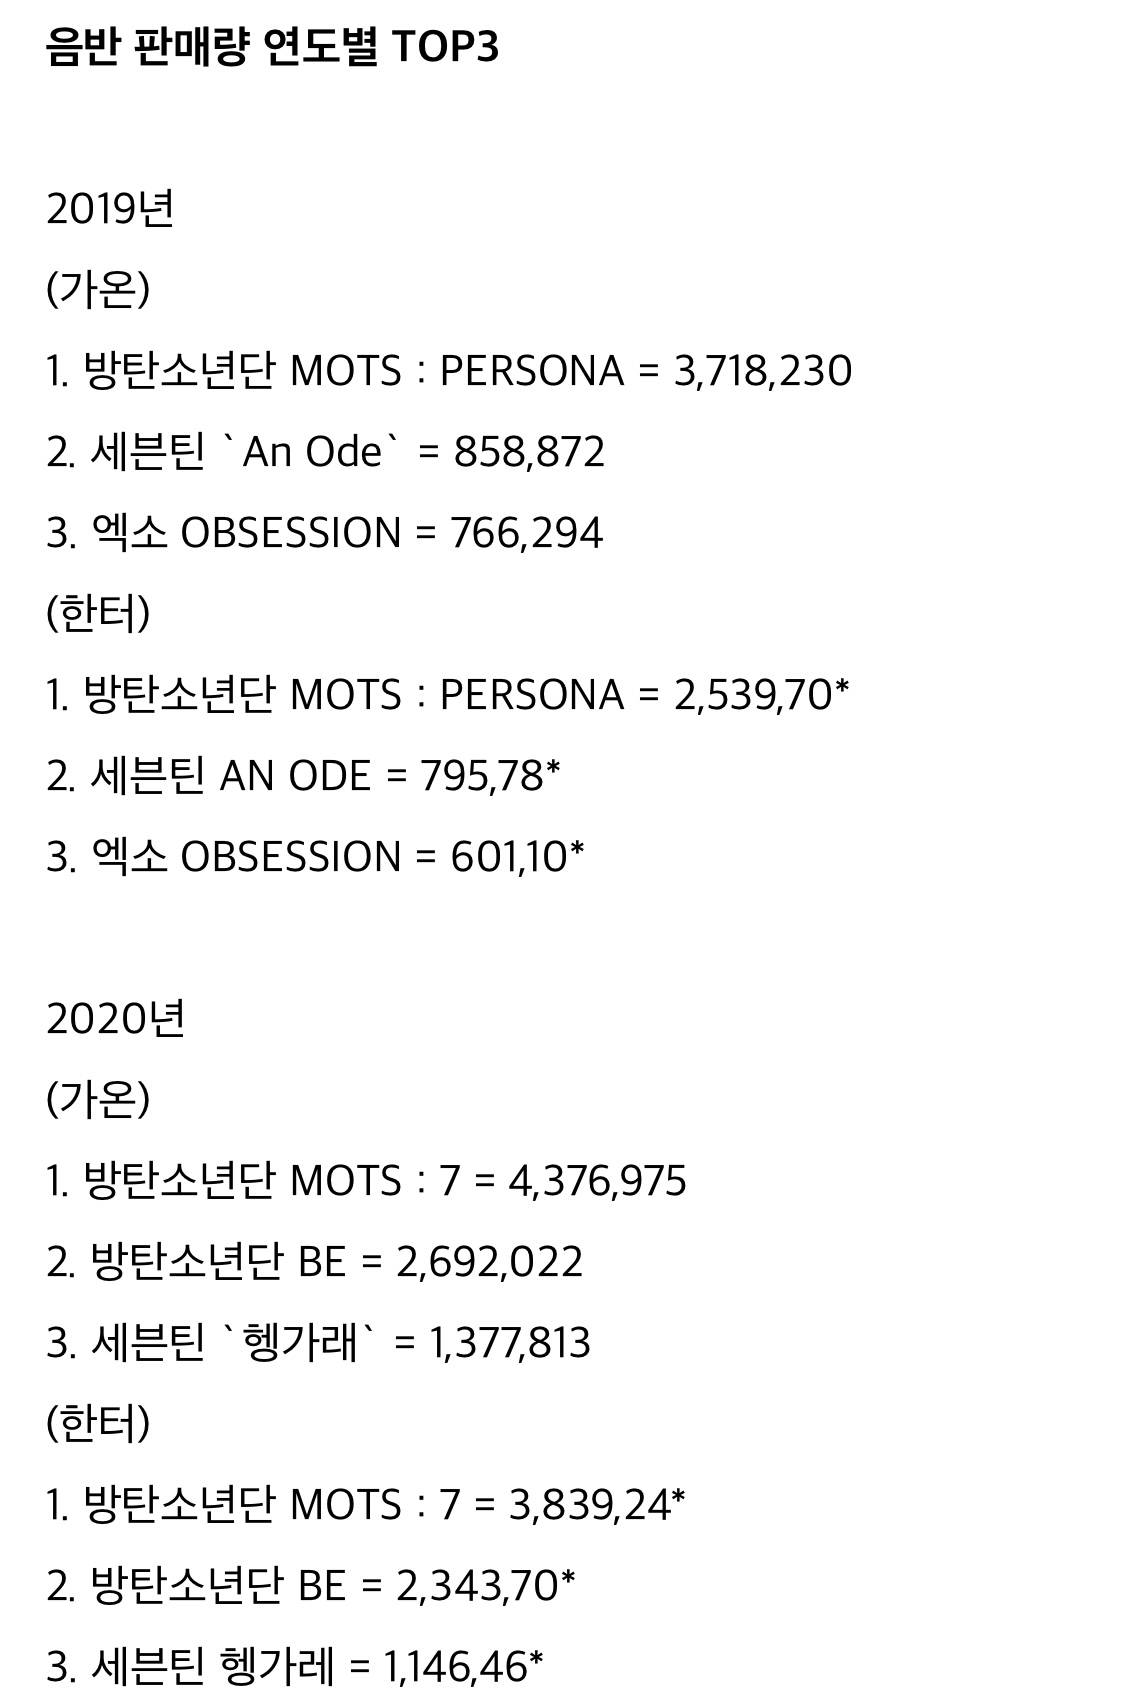 하이브 SM YG JYP 연도별 (해외/국내)매출 그래프...... 최근 4년간 추이 | 인스티즈